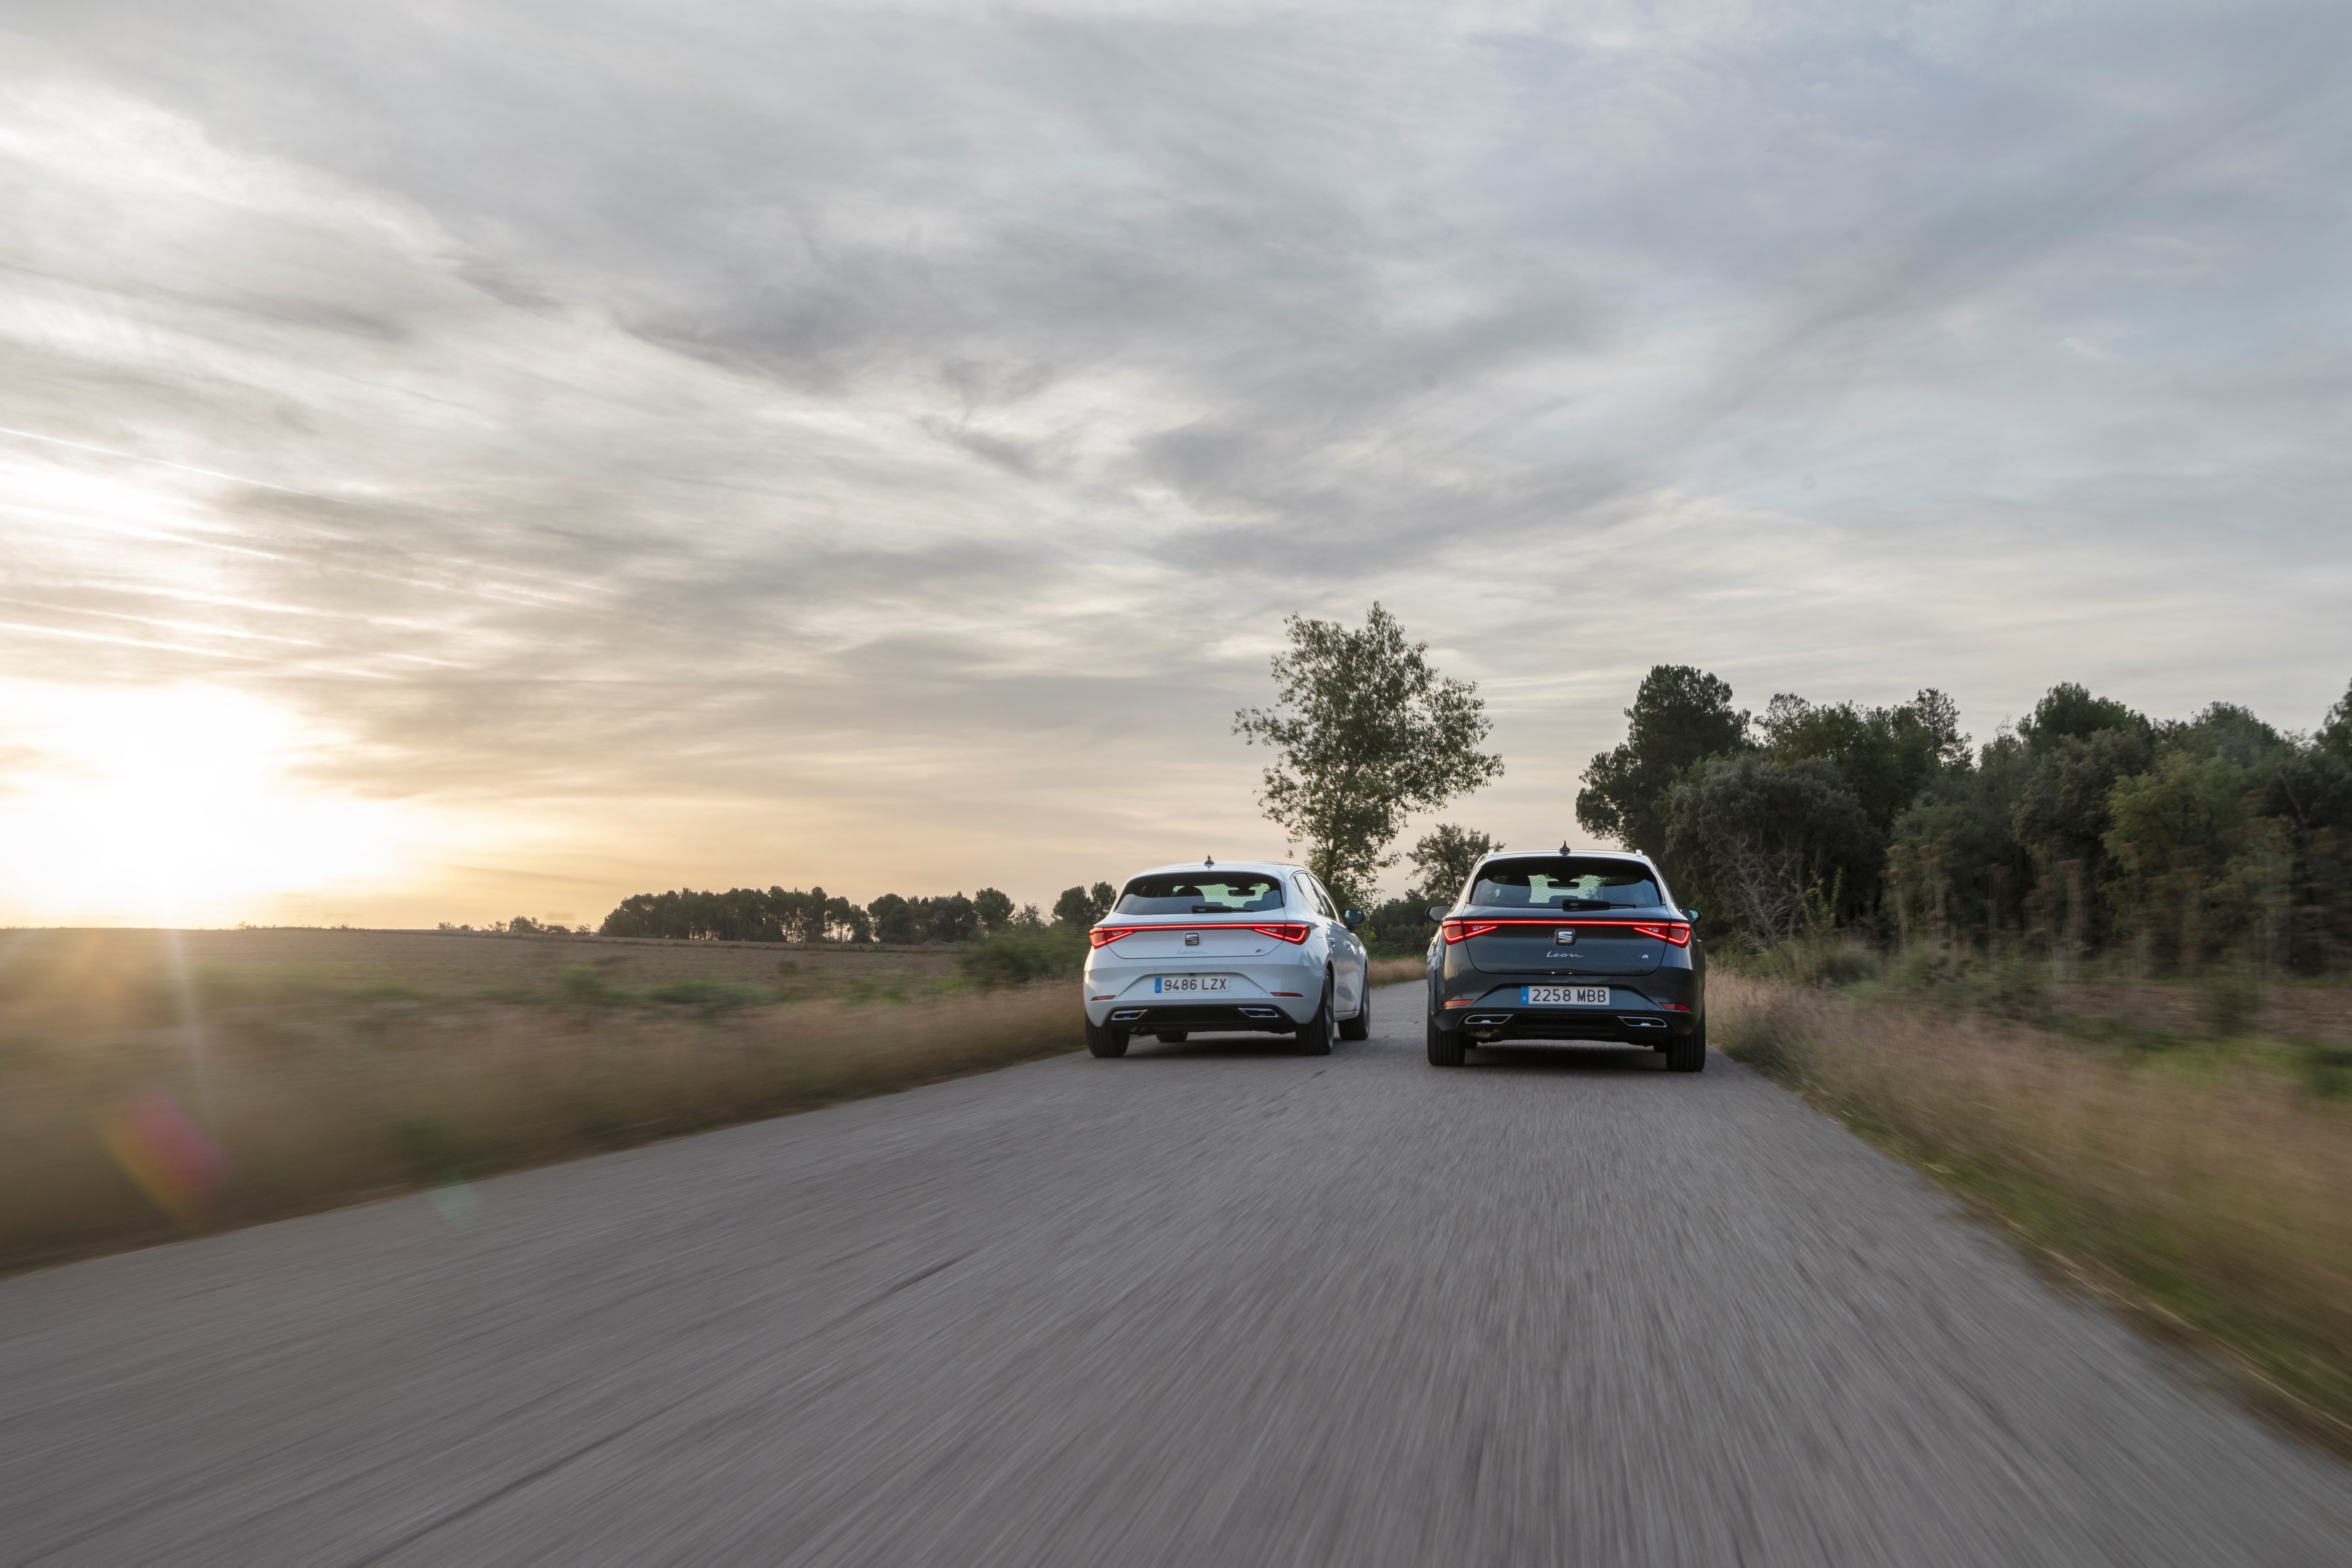 Las cuatro generaciones del SEAT León se reúnen - Periodismo del Motor